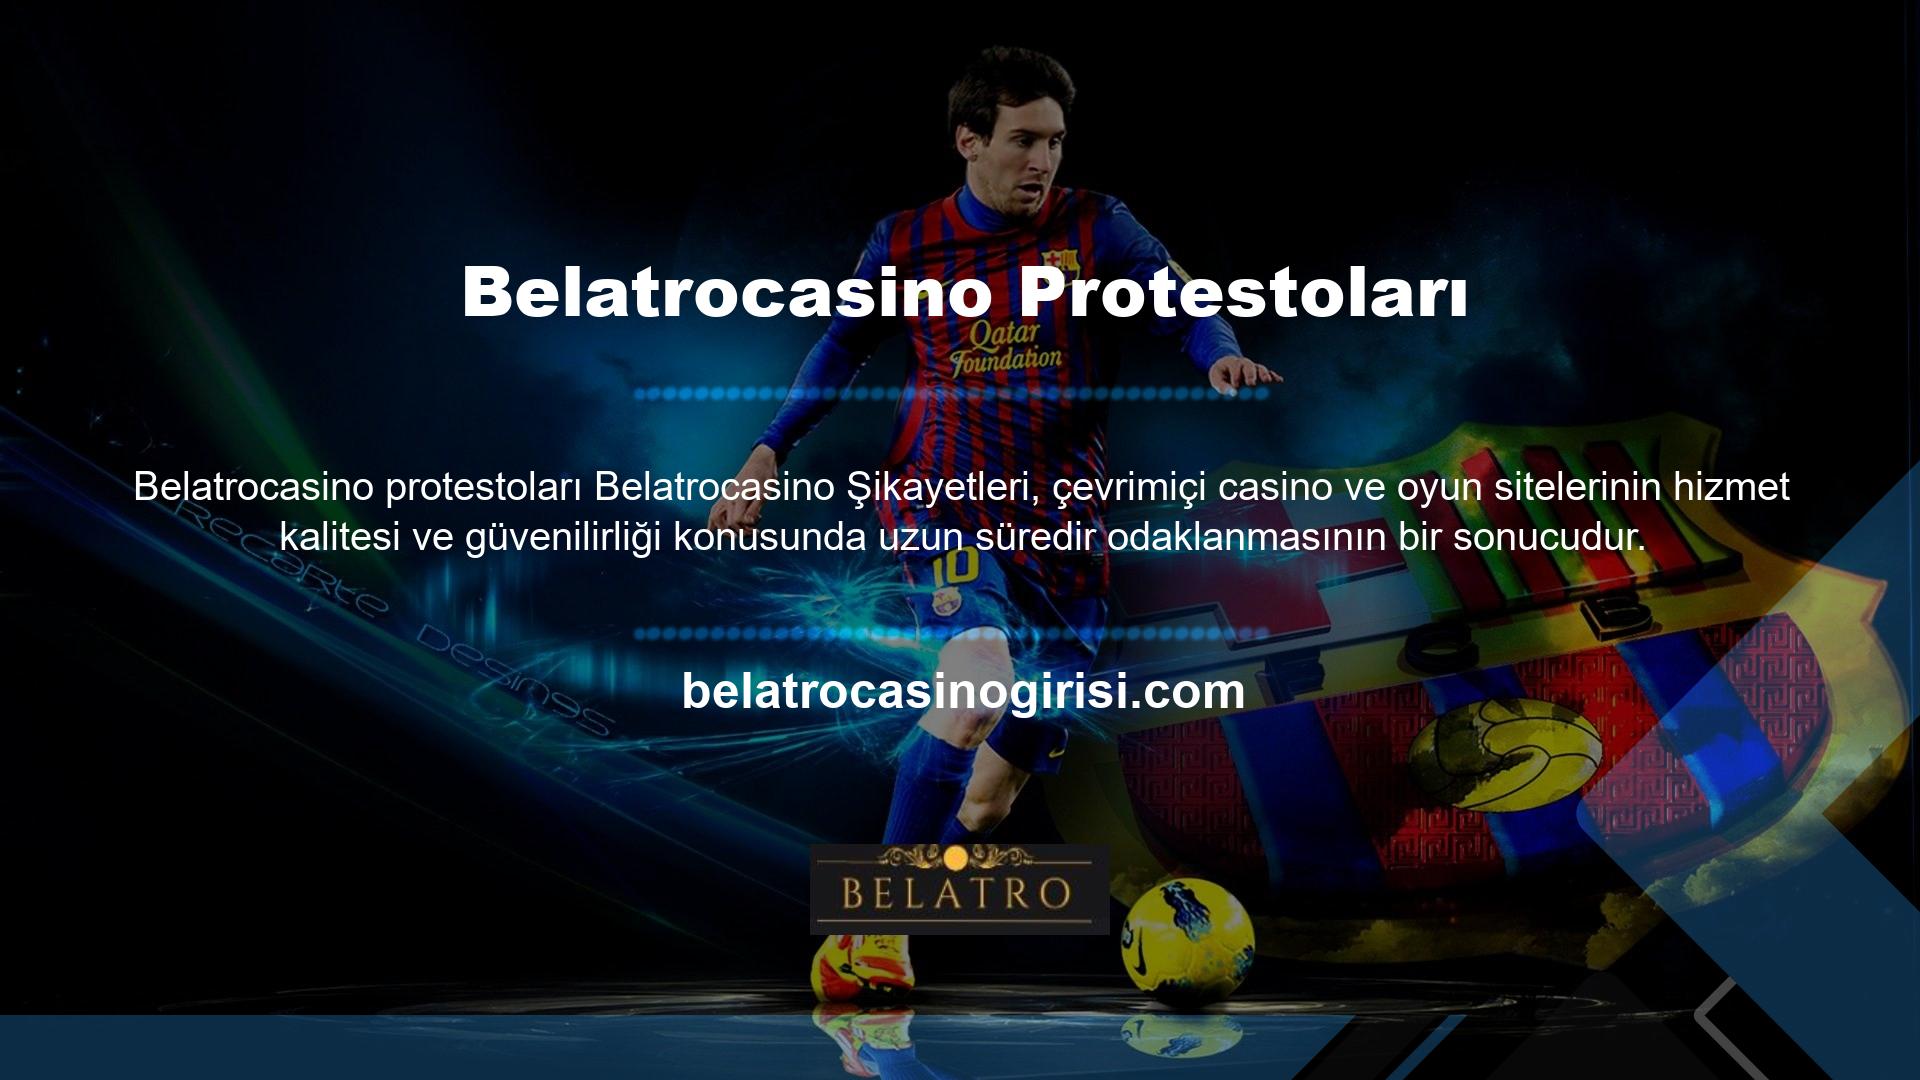 Mutlu saatler sunan Belatrocasino casinoları ve oyun siteleri, bu ortamda olası sorunlara karşı sürekli olarak dikkatlidir